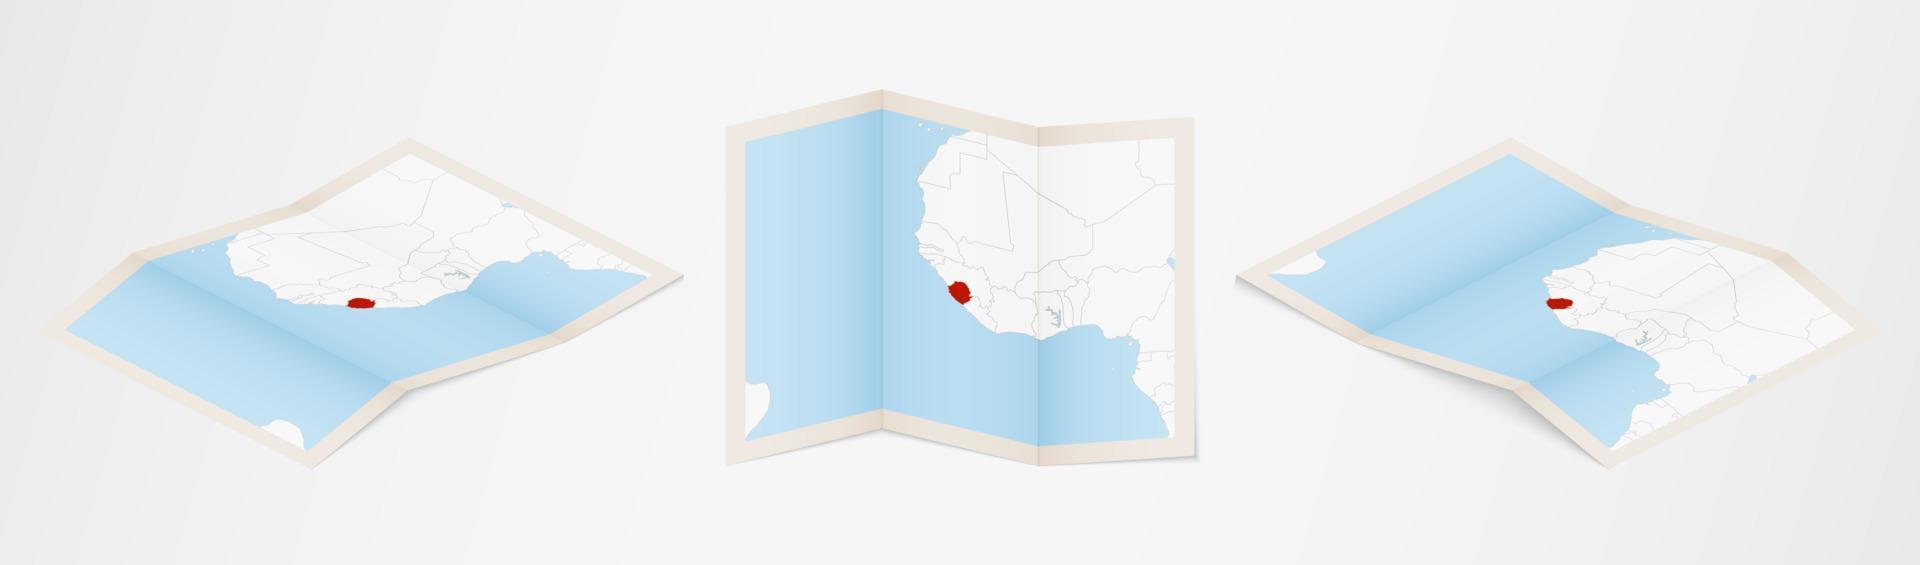 Faltkarte von Sierra Leone in drei verschiedenen Versionen. vektor